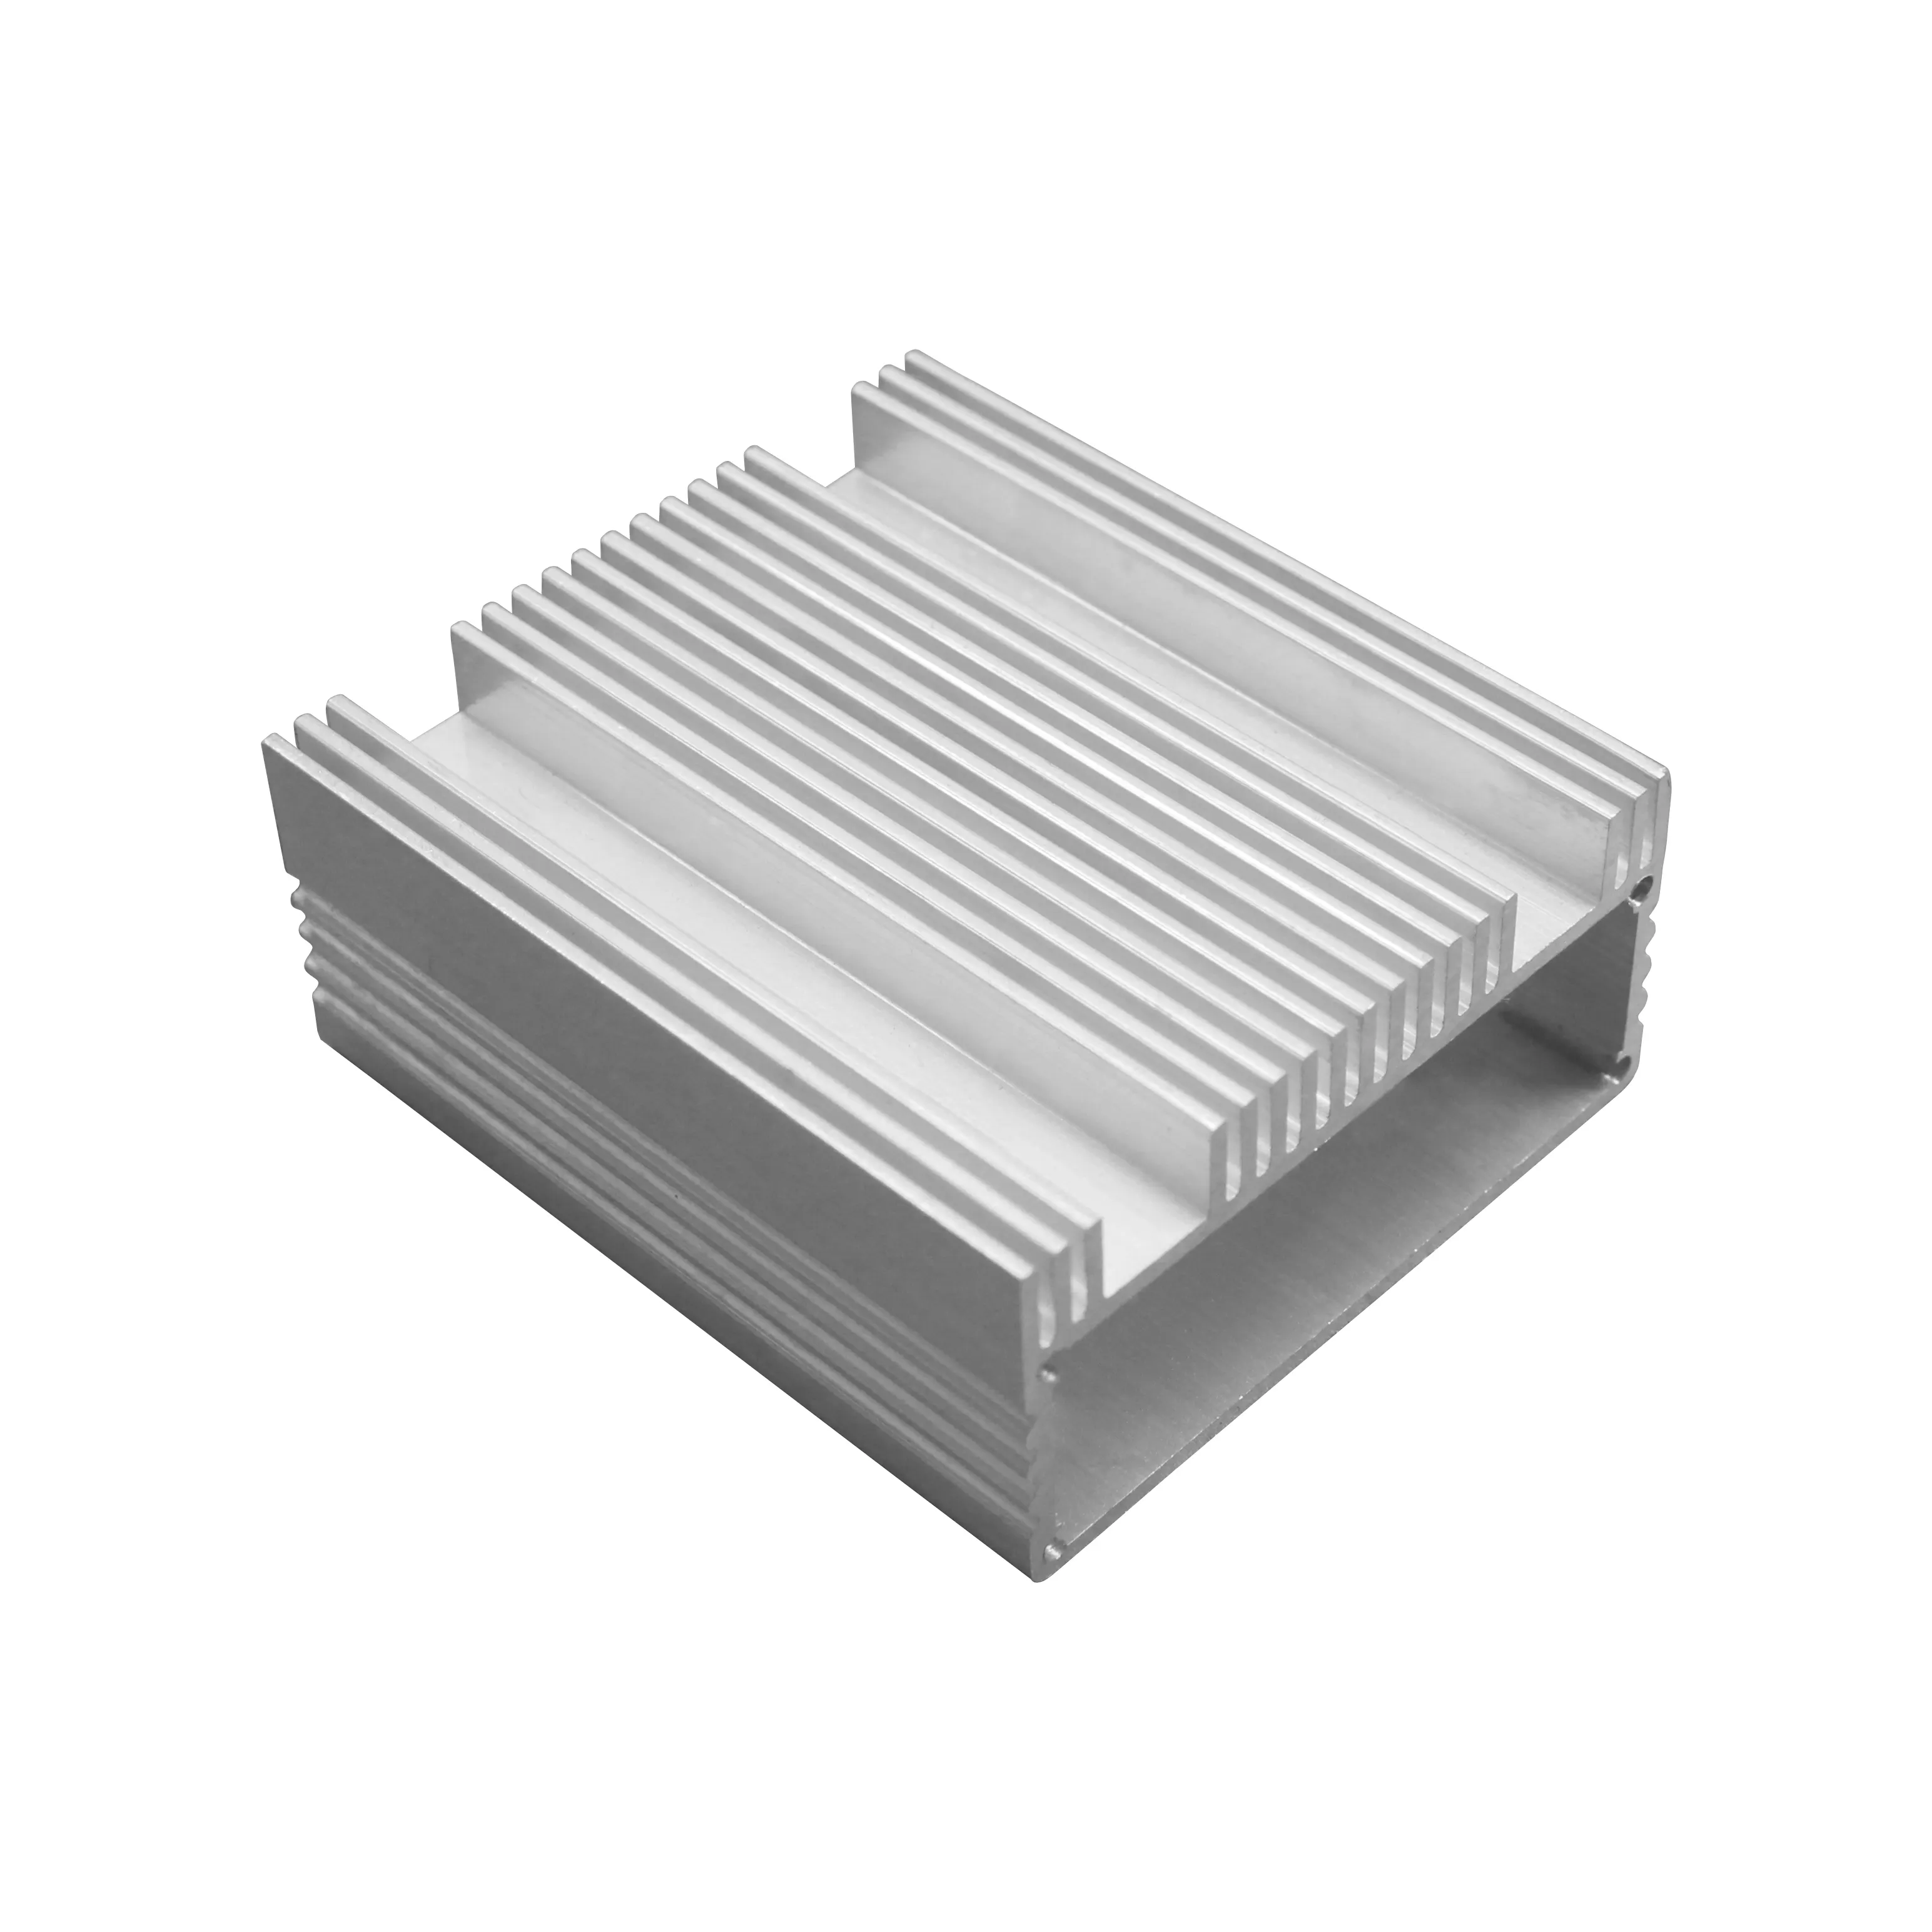 Di alta Qualità Anodizzato Spazzolato Custodia Scatola di Alluminio Progetto Caso per il Prodotto Elettronico